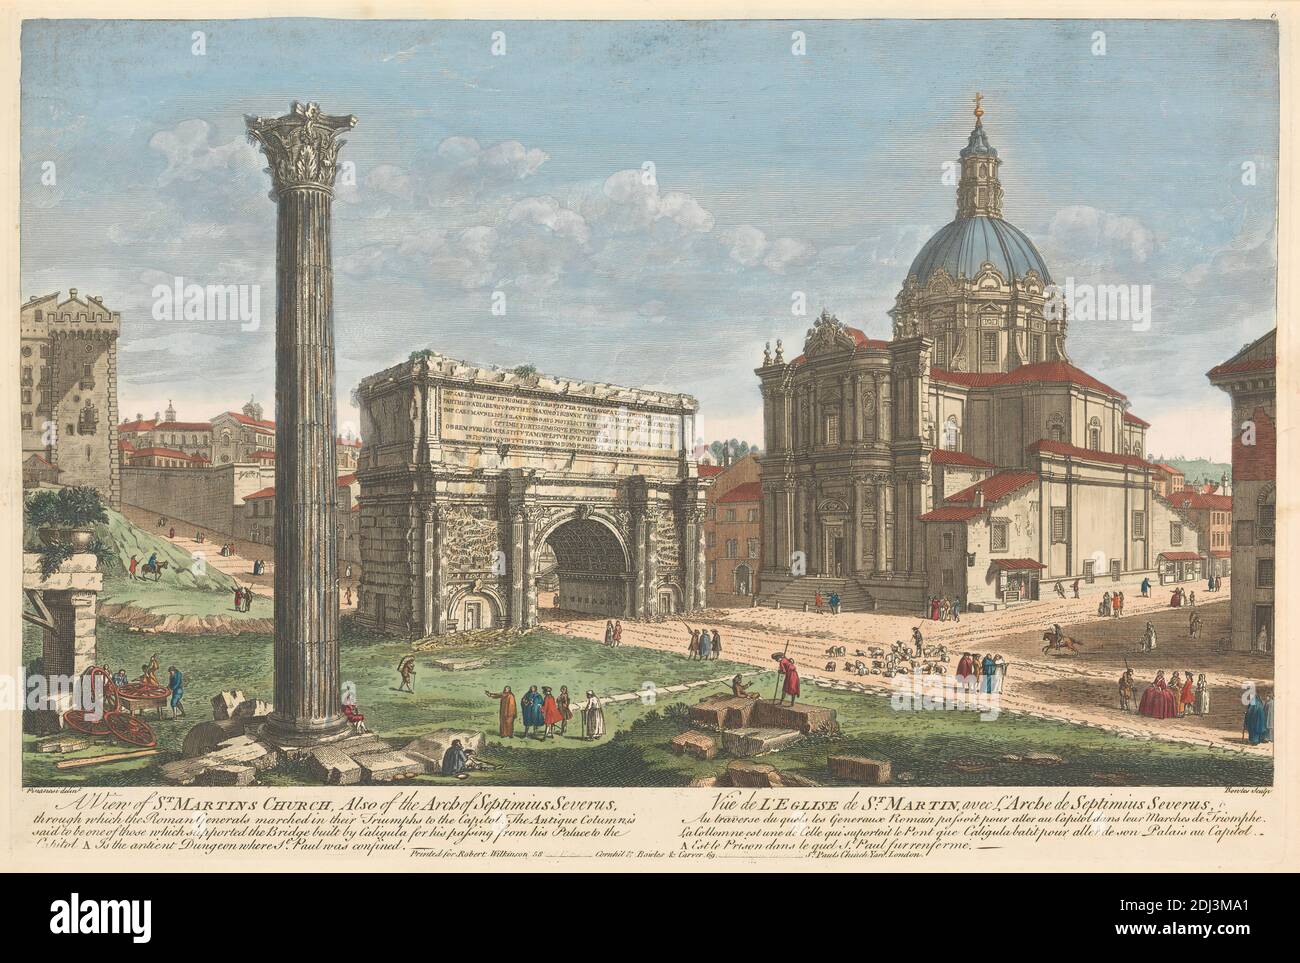 Une vue de l'église Saint-Martin, aussi de l'arche de Septimius Severus, par laquelle les généraux romains ont défilé dans leurs triomphes au Capitole., Thomas Bowles, ca. 1712–mort 1753, Britannique, après artiste inconnu, (Pinanesi), gravure non datée de couleur main sur papier vélin, plaque: 11 1/4 x 16 1/4in. (28.6 x 41,3 cm) et NE PAS UTILISER : 12 1/2 x 18 po. (31.8 x 45,7 cm), arche, sujet architectural, église, pilier, ruines, Italie, Rome Banque D'Images